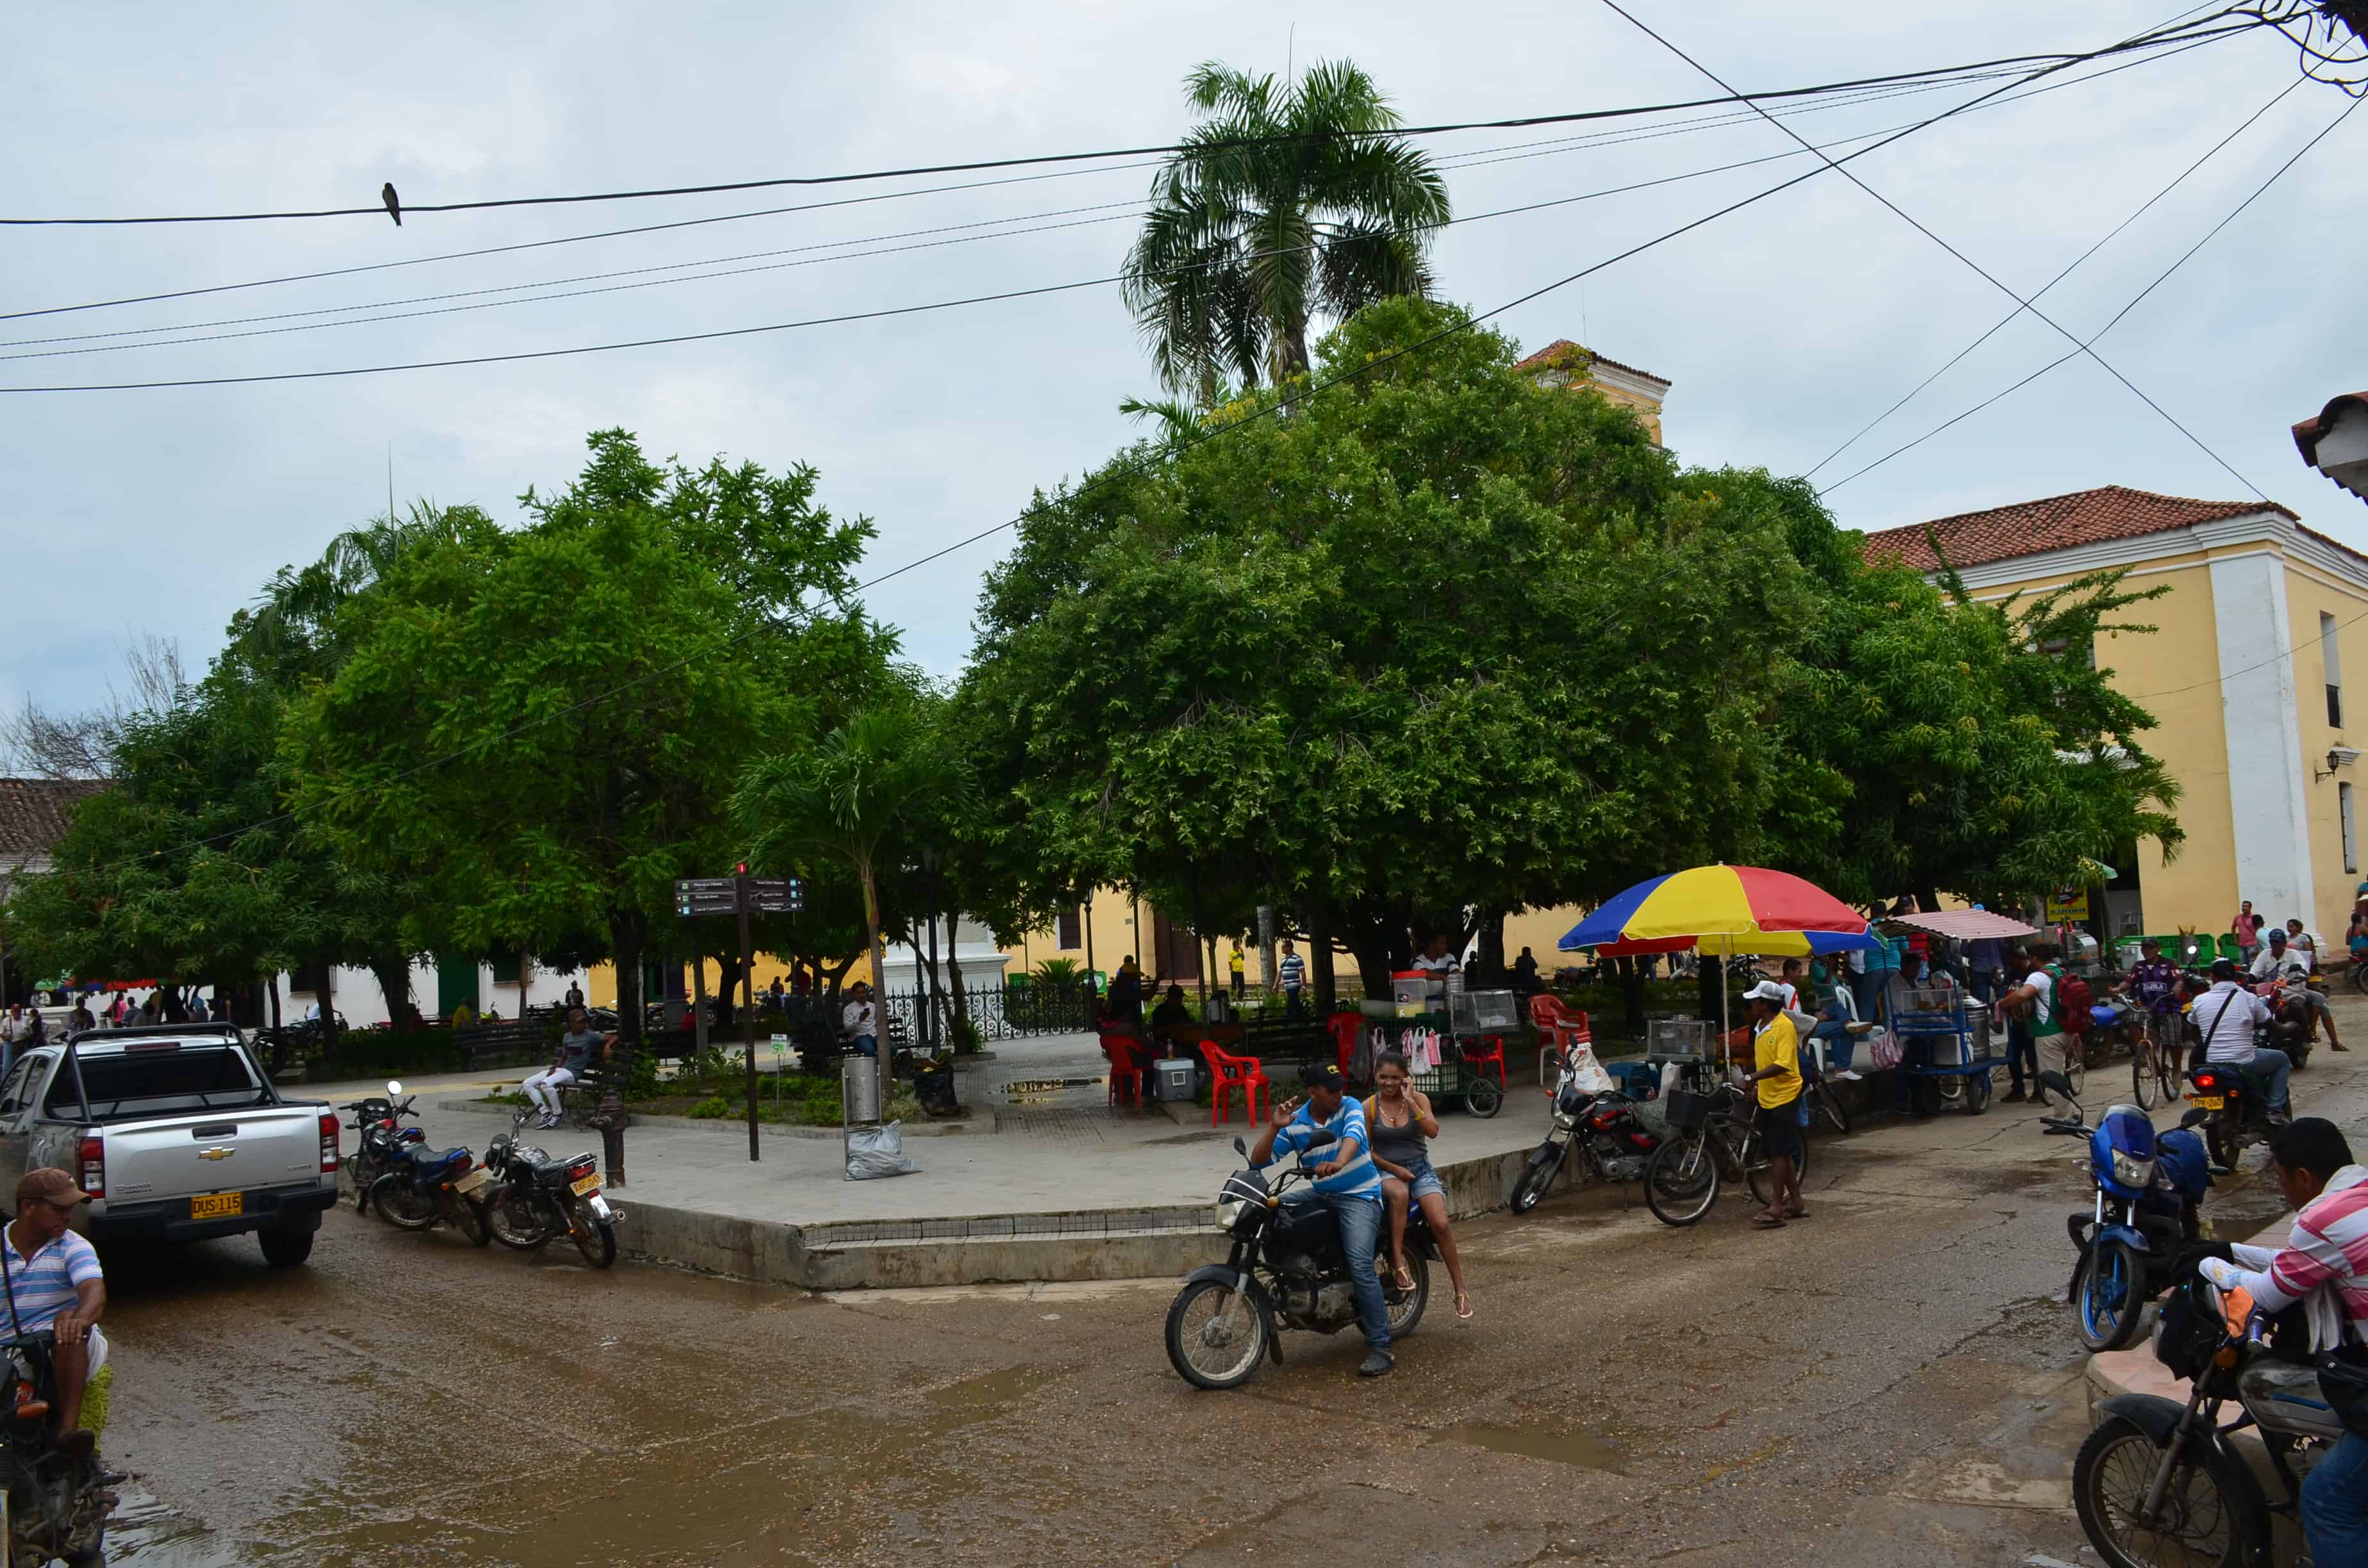 Plaza de la Libertad in Mompox, Bolívar, Colombia